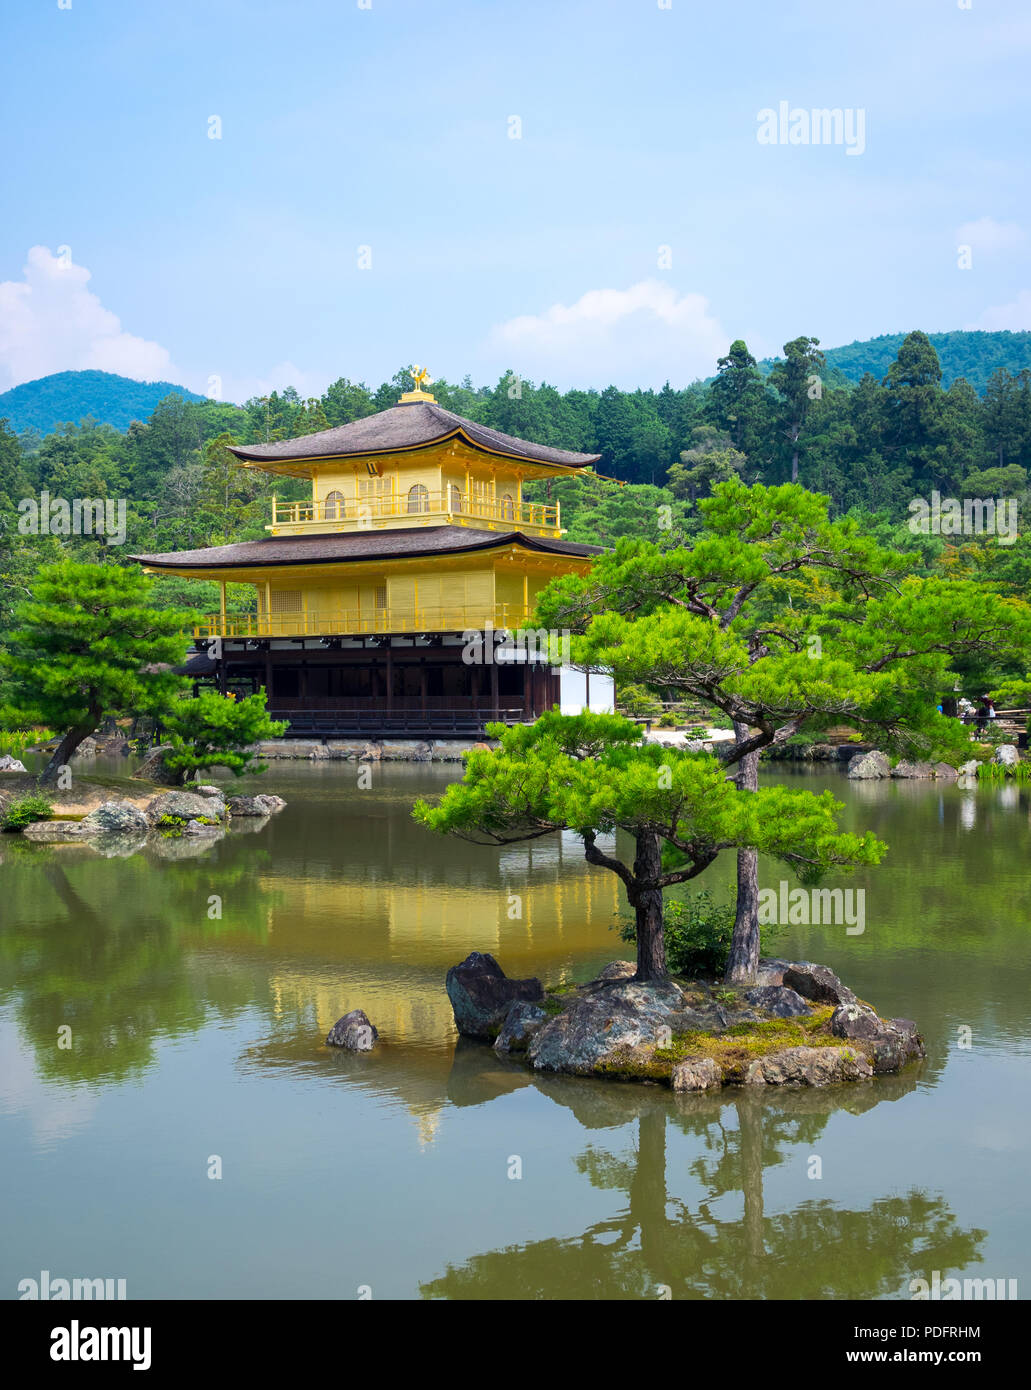 Kinkaku-ji (auch als kinkakuji oder Rokuon-ji bekannt), der Tempel des Goldenen Pavillon, ist berühmt zen-buddhistischen Tempel in Kyoto, Japan. Stockfoto